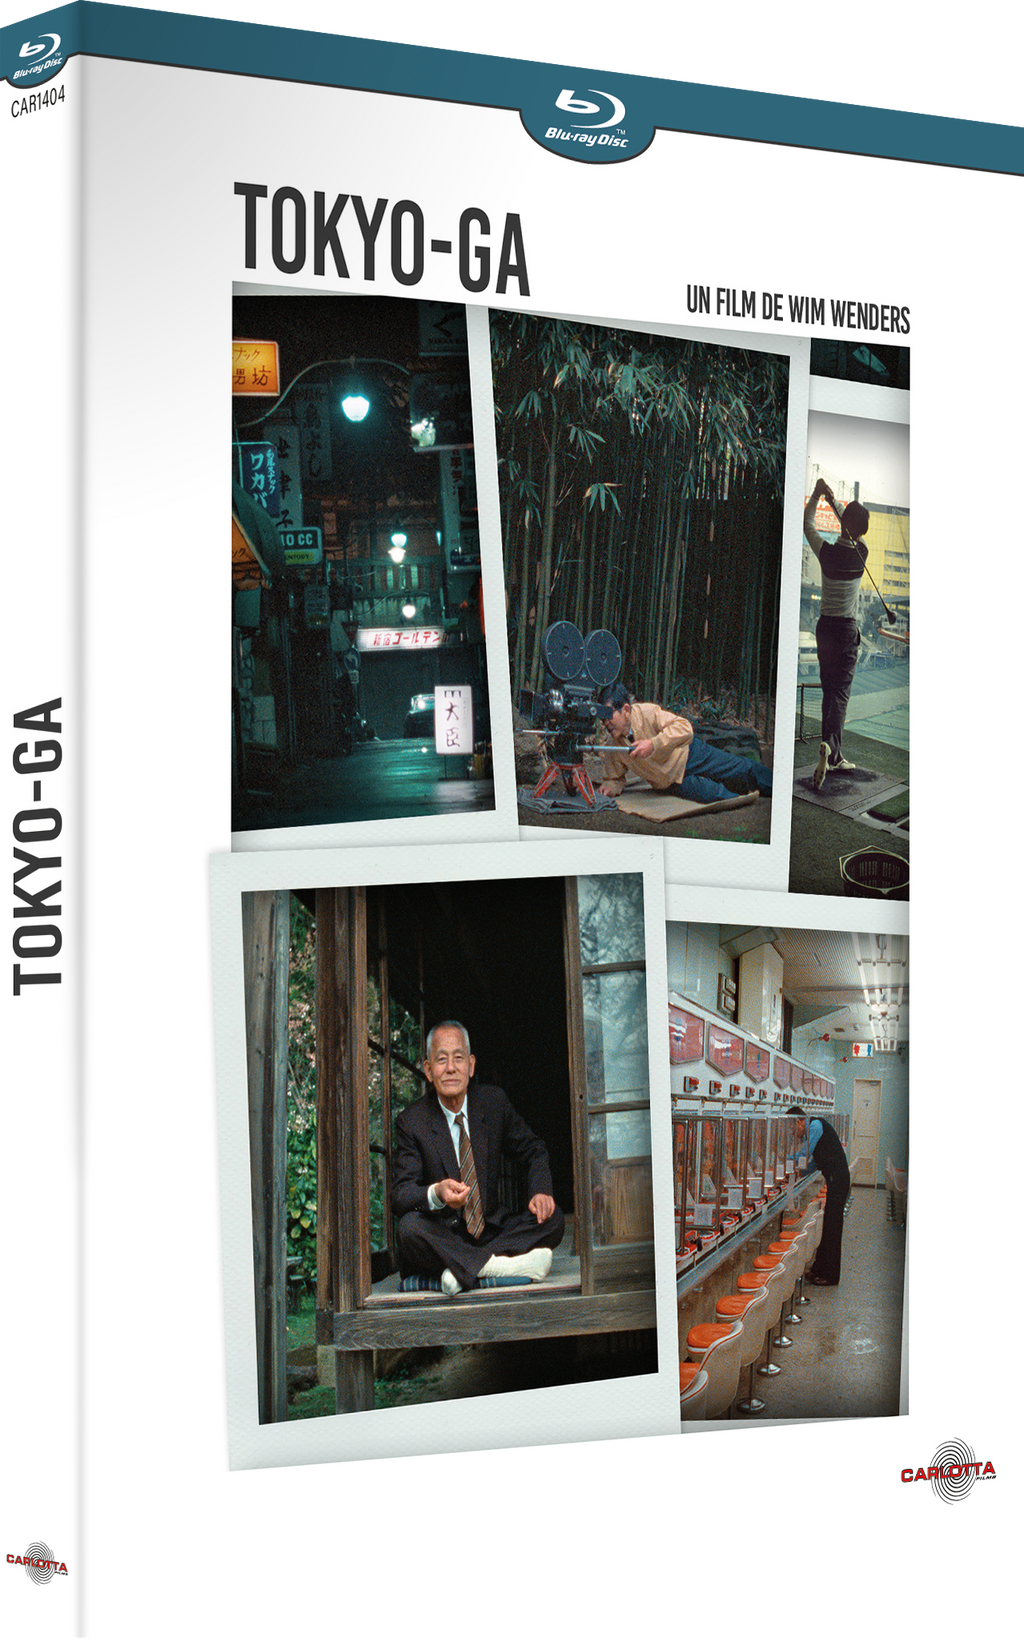 Tokyo-ga by Wim Wenders